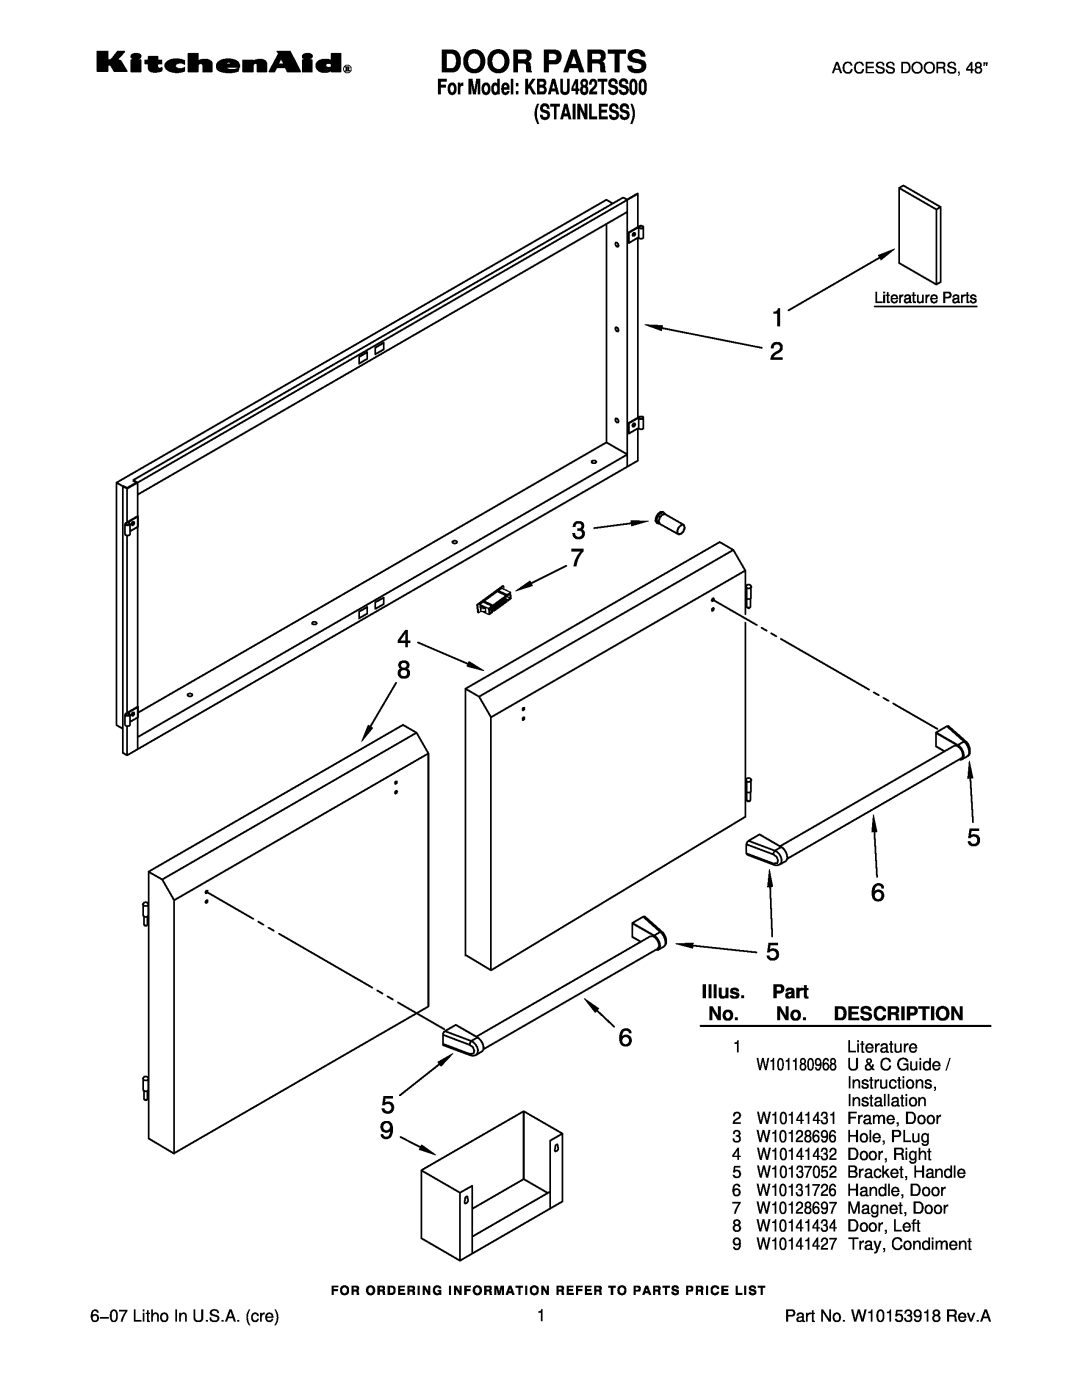 KitchenAid manual Door Parts, Stainless, For Model KBAU482TSS00, Illus. Part No. No. DESCRIPTION, 1Literature 